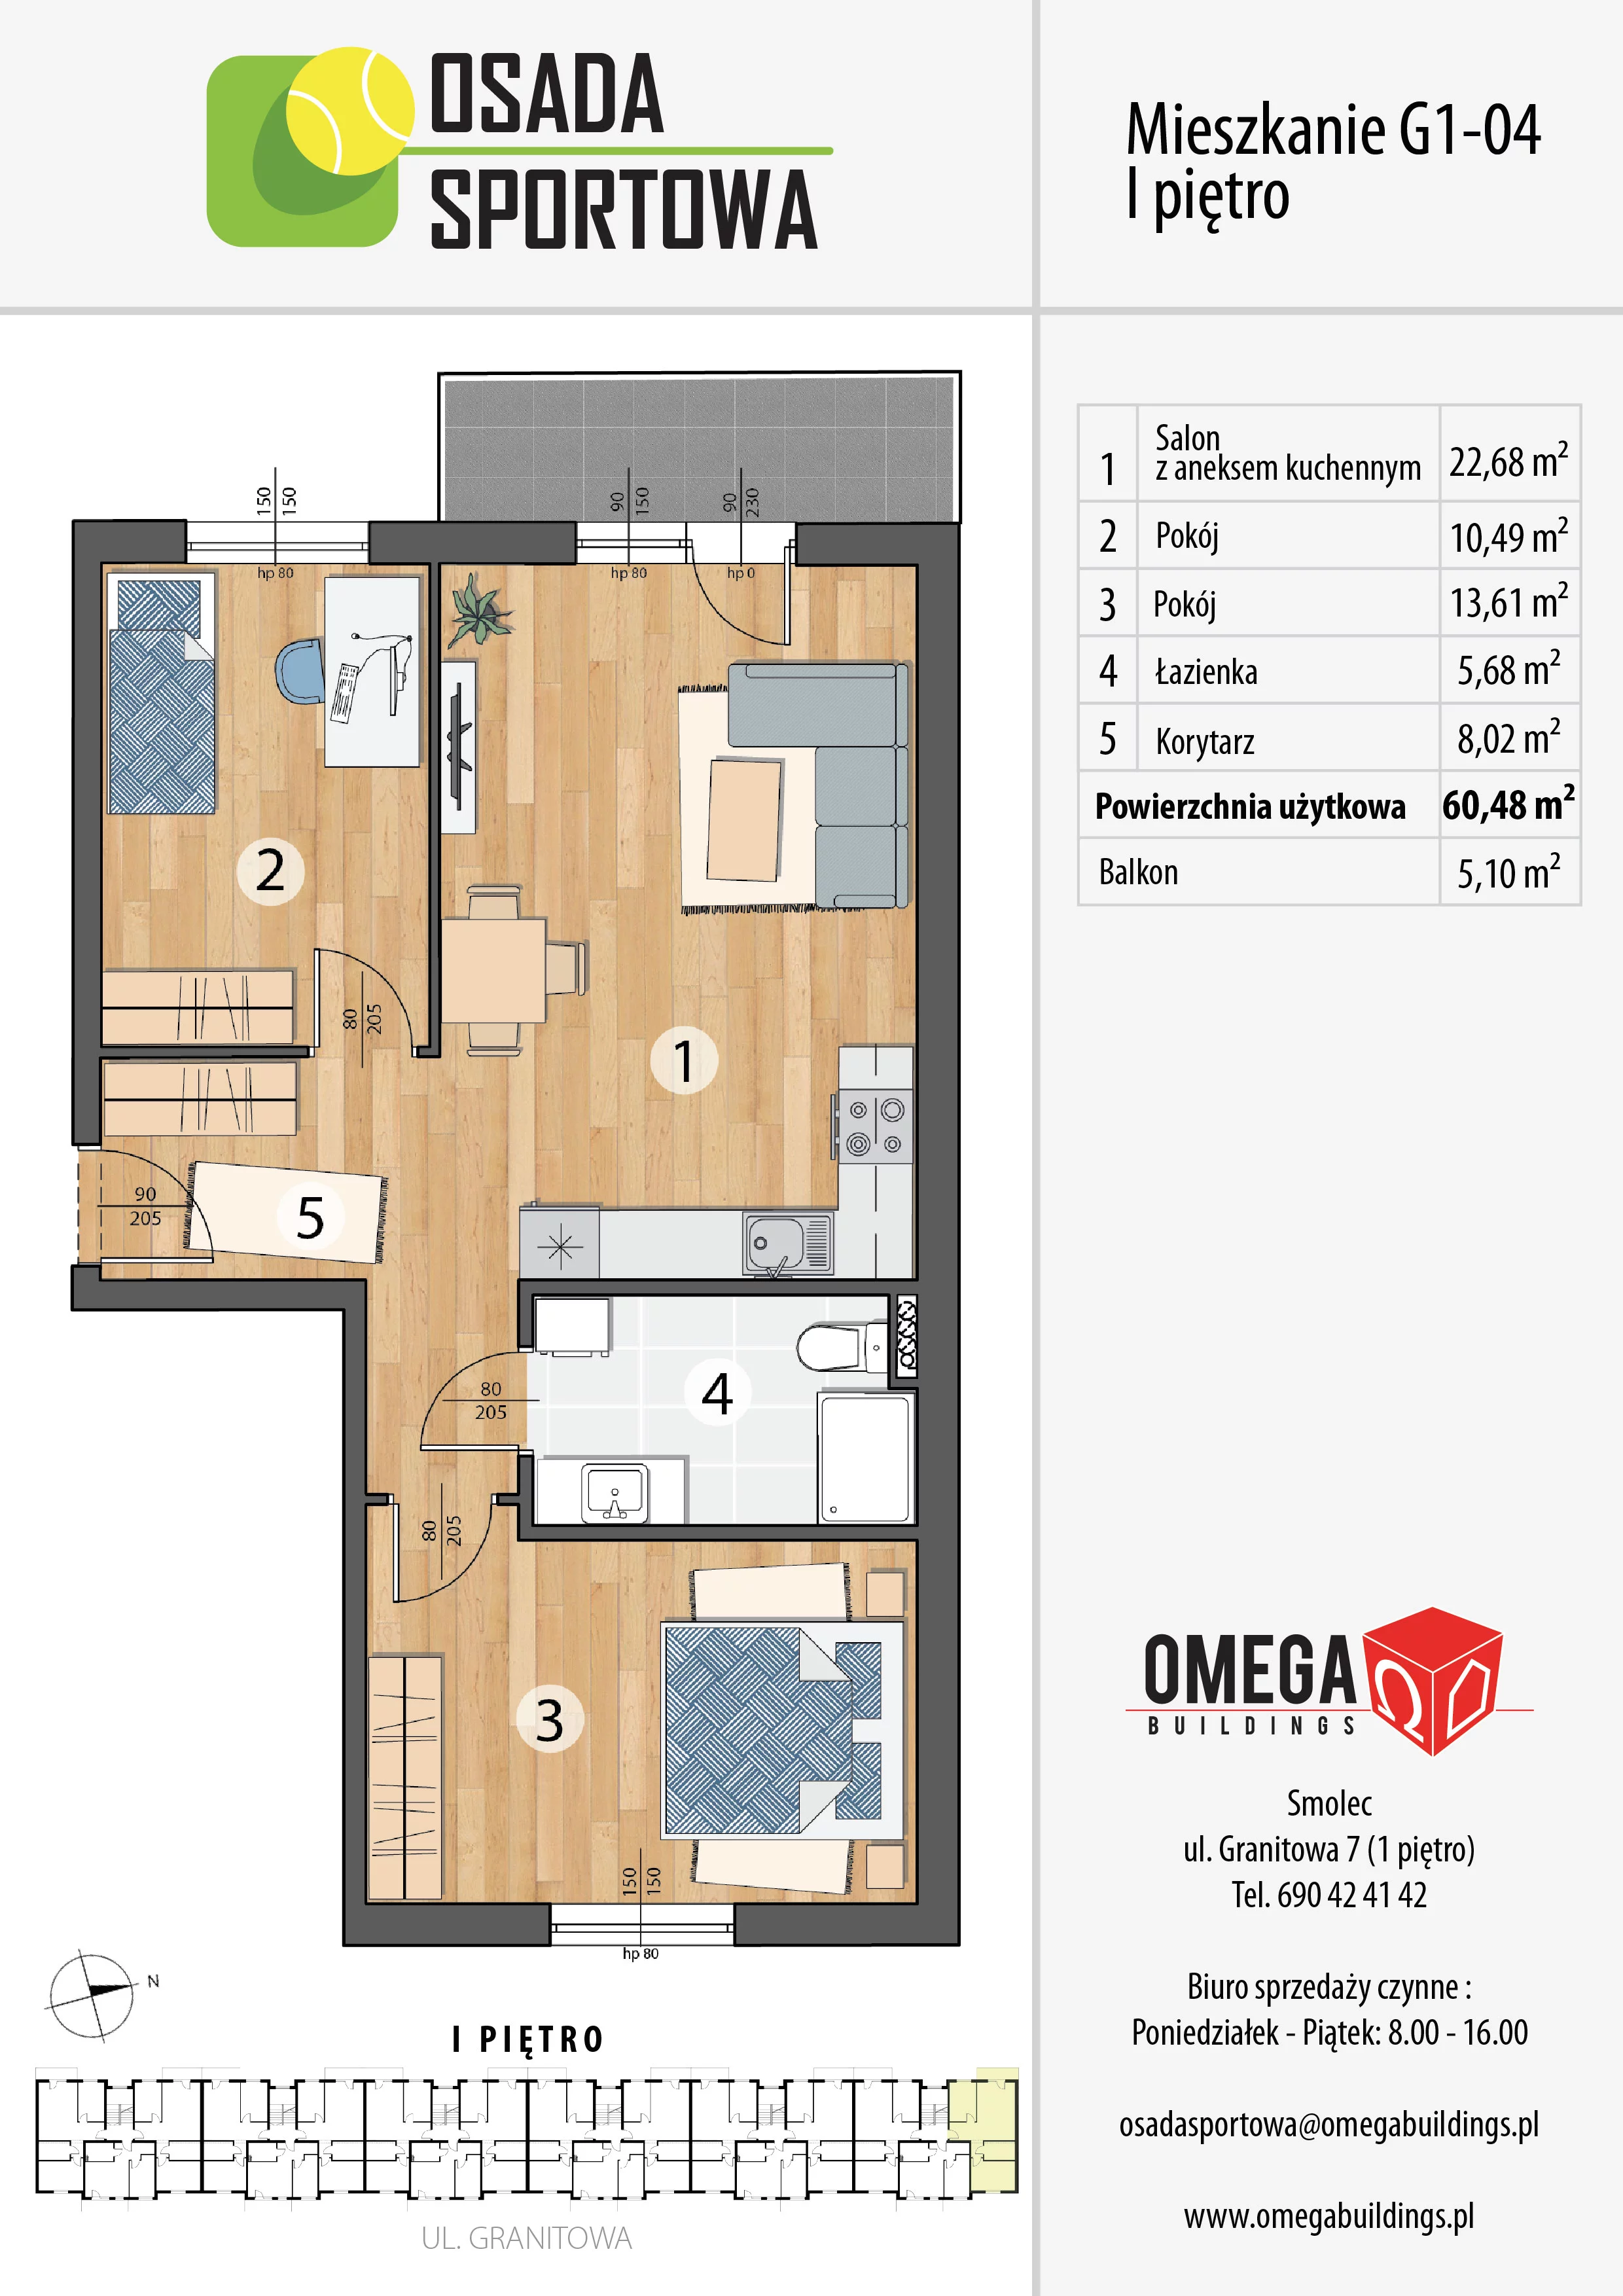 Mieszkanie 60,48 m², piętro 1, oferta nr G1-04, Osada Sportowa Budynek G, Smolec, ul. Granitowa 52-62